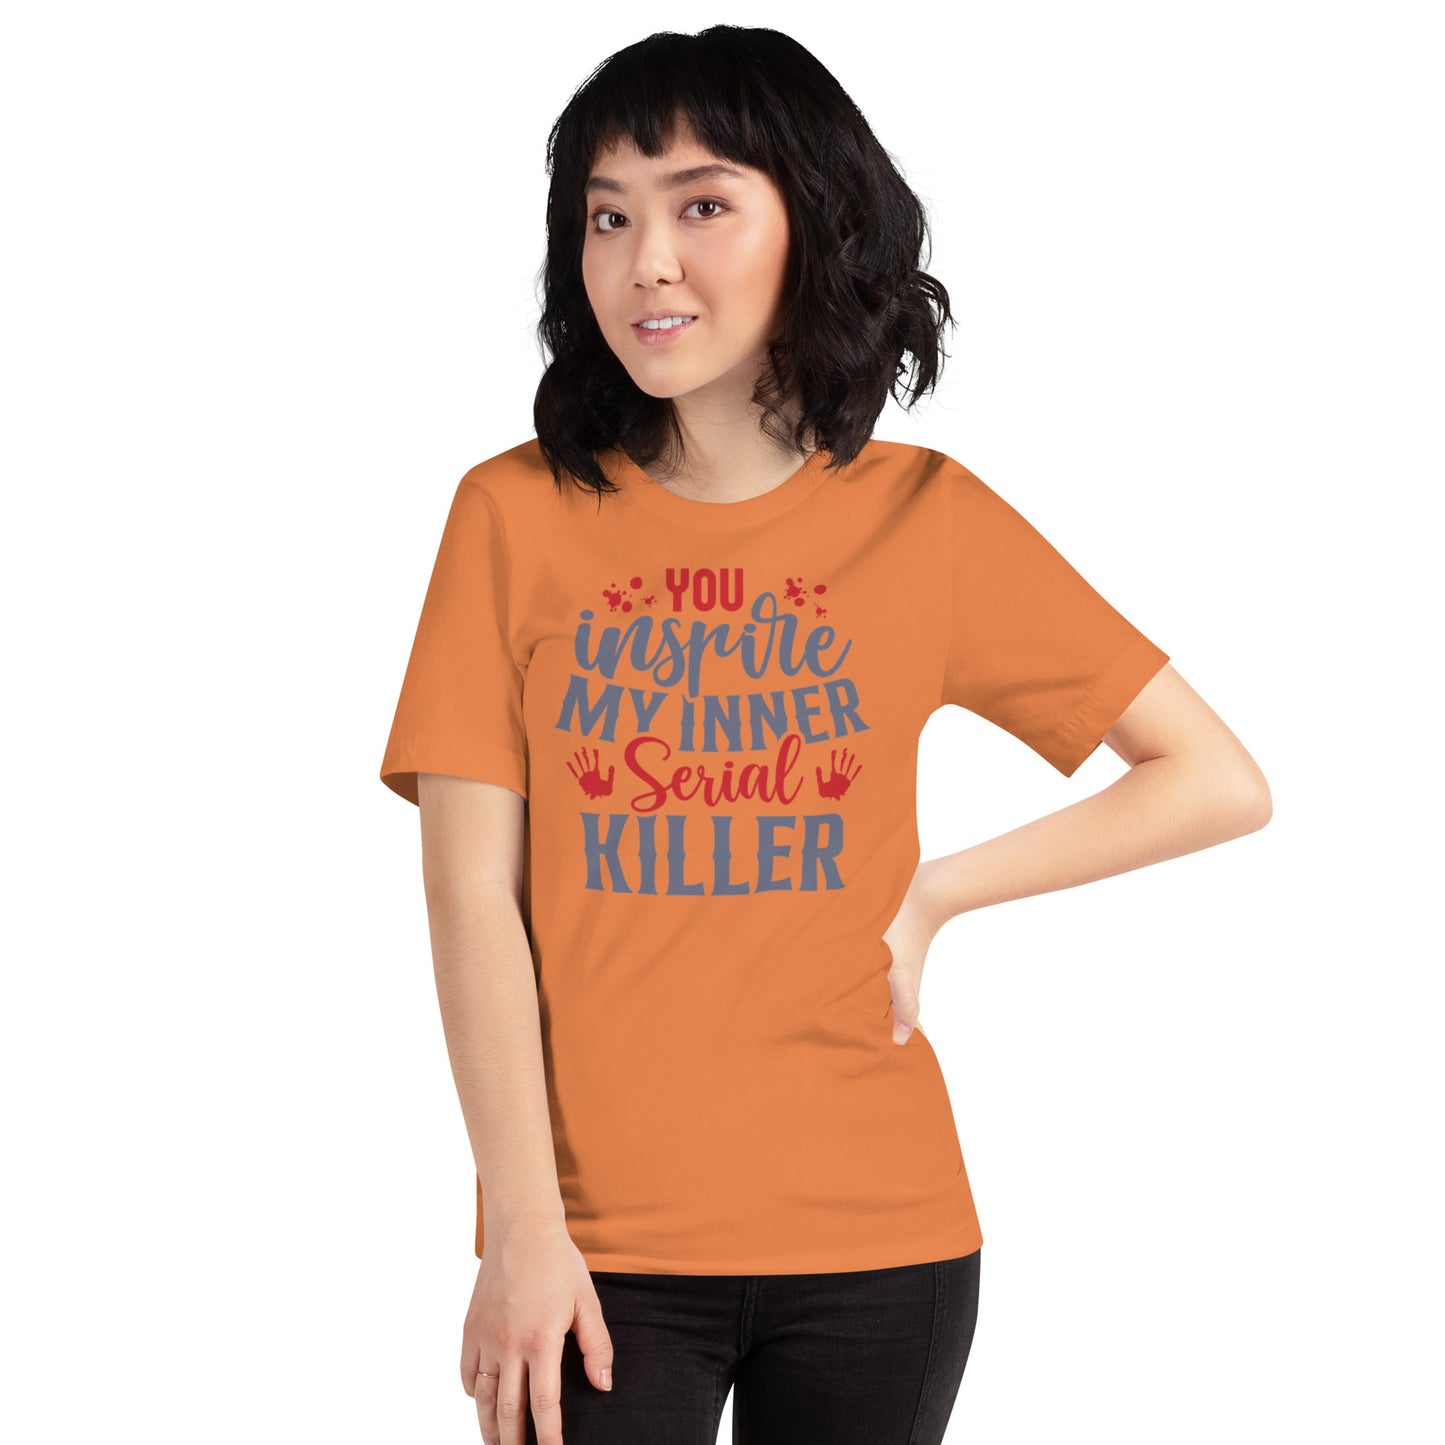 You Inspire My Inner Serial Killer Unisex t-shirt